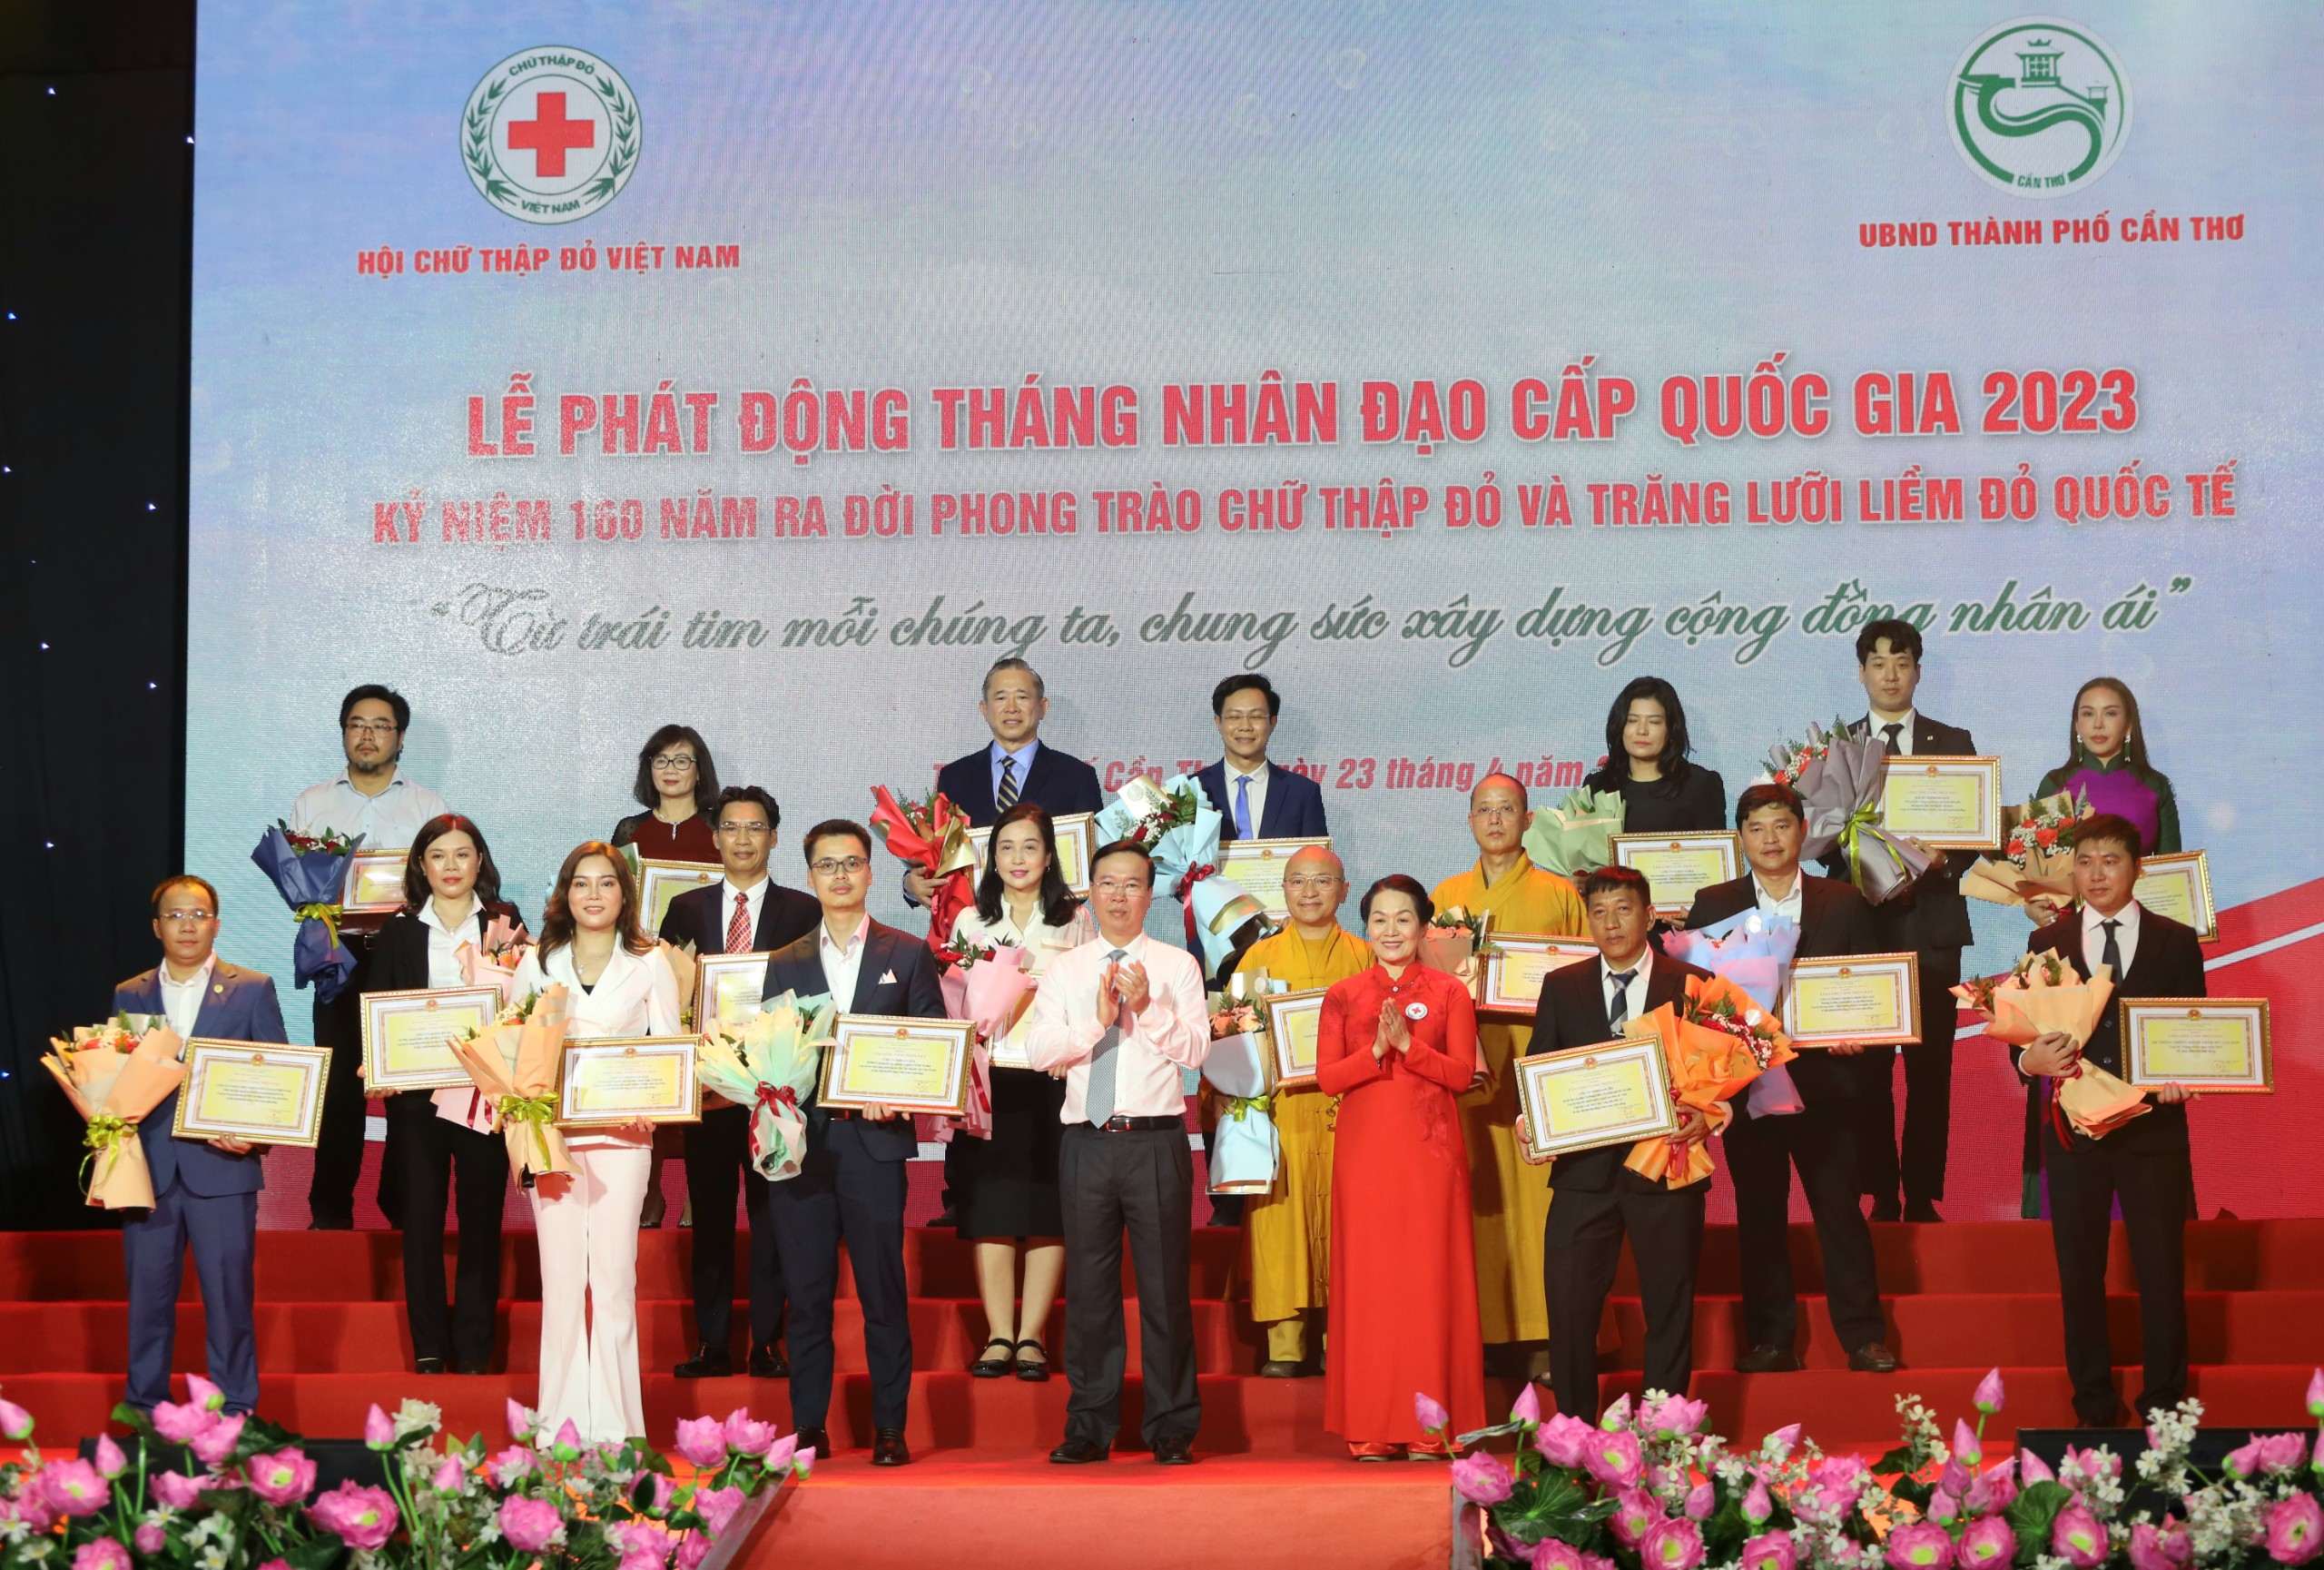 Chủ tịch nước Võ Văn Thưởng và Bà Bùi Thị Hòa - Bí thư Đảng đoàn, Chủ tịch Hội Chữ thập đỏ Việt Nam trao hoa và bảng ghi nhận tấm lòng vàng cho các tổ chức, cá nhân đã tích cực ủng hộ Tháng Nhân đạo năm 2023.